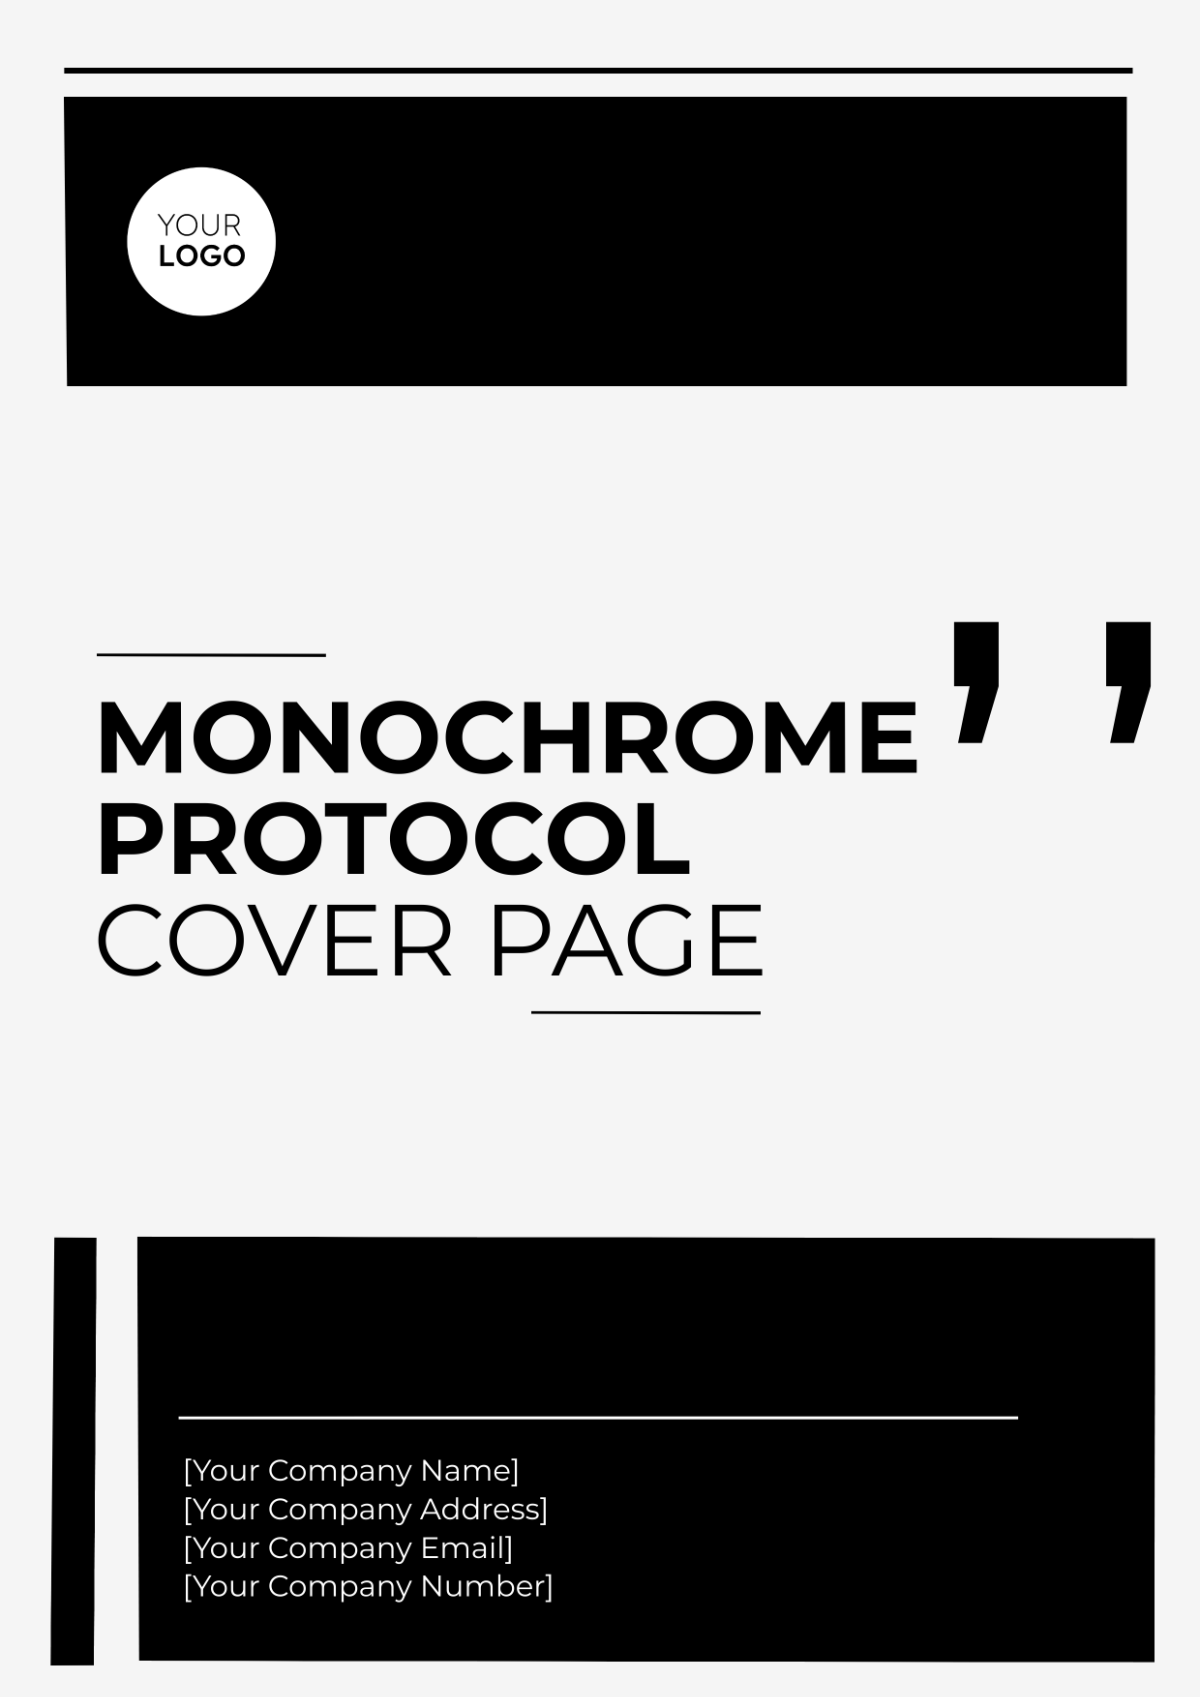 Monochrome Protocol Cover Page